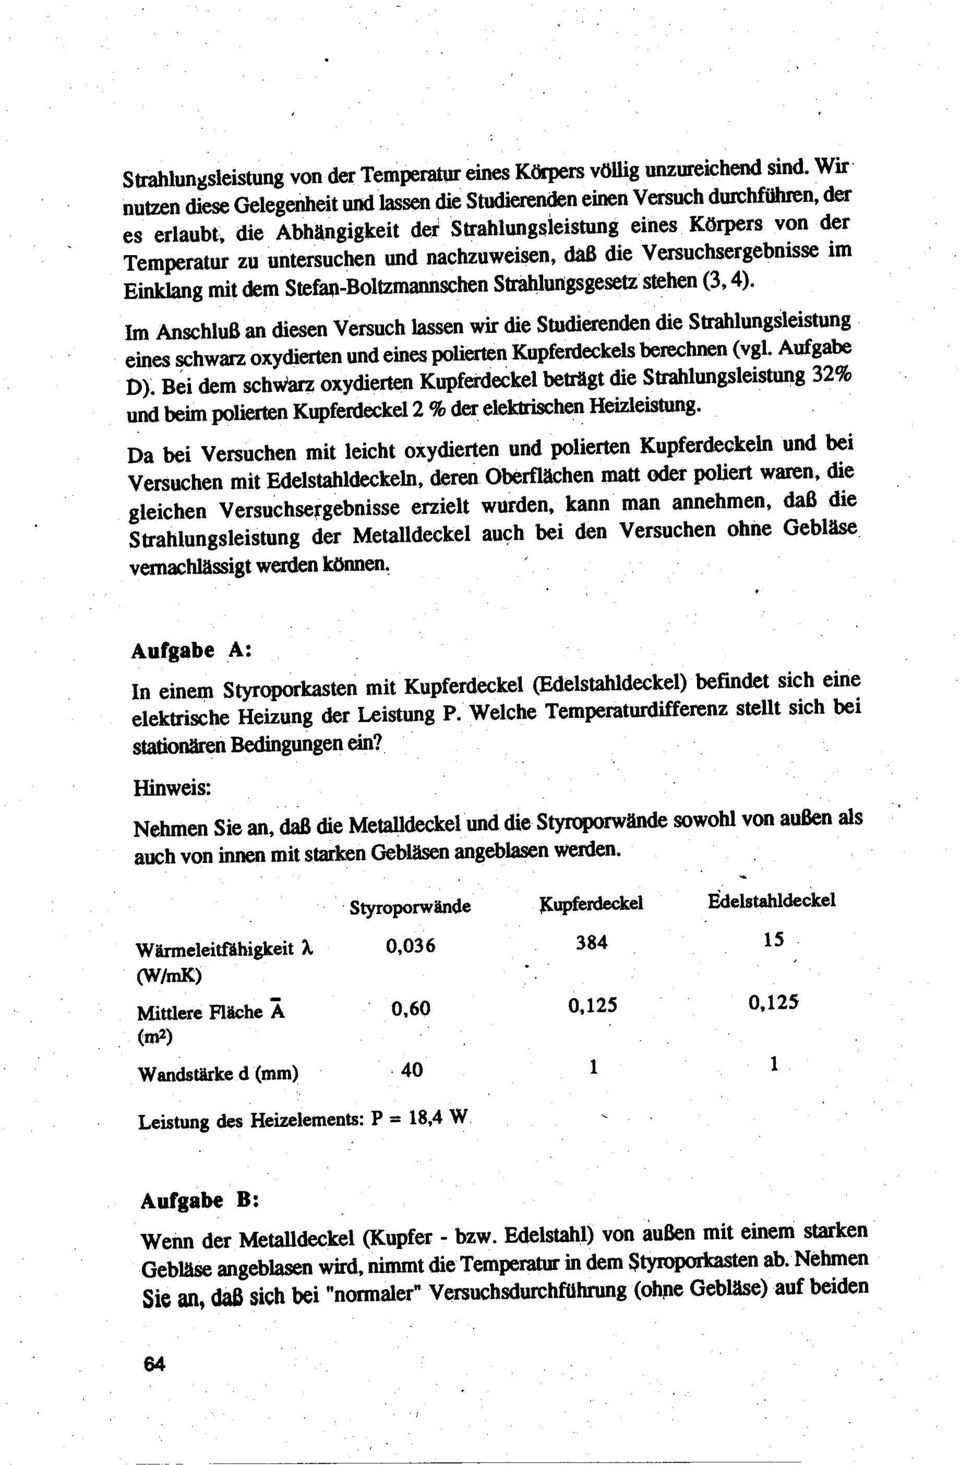 nachzoweisen dab die Versuchsergebnisse im Einklang mit dem Stefan-Boltzmannschen Str8Iılungsgesetzstehen (34).